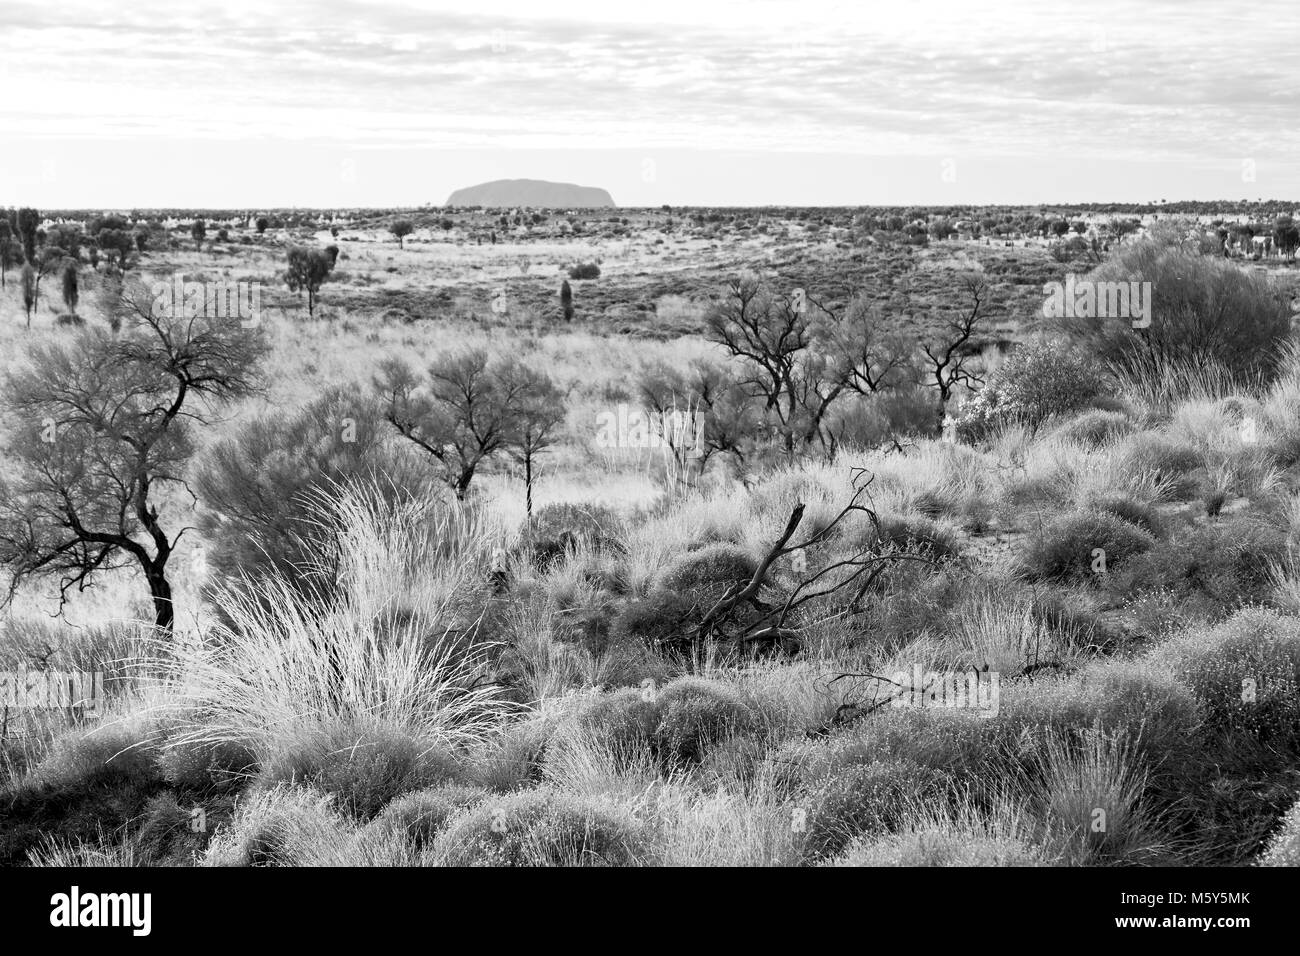 En Australie le concept d'environnement sauvage dans le paysage outback Banque D'Images